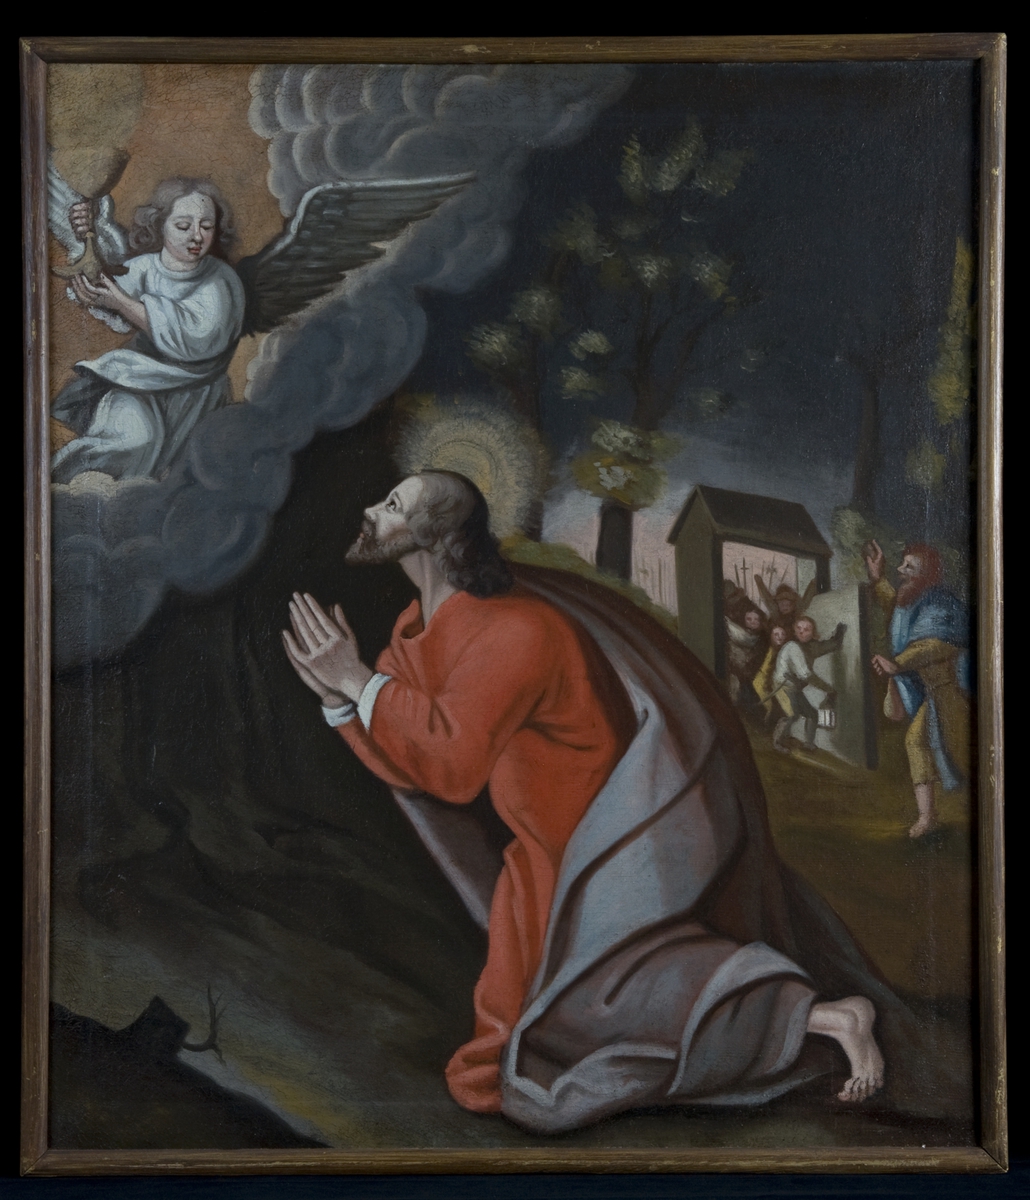 Motivet er Jesus i Getsemane. Jesus kneler i bildets forgrunn med hendene foldet. Til venstre svever en engel i en sky. Engelen bærer på en kalk. I bakgrunnen ser man hvordan Judas leder an soldatene som kommer inn for å arrestere Jesus. 